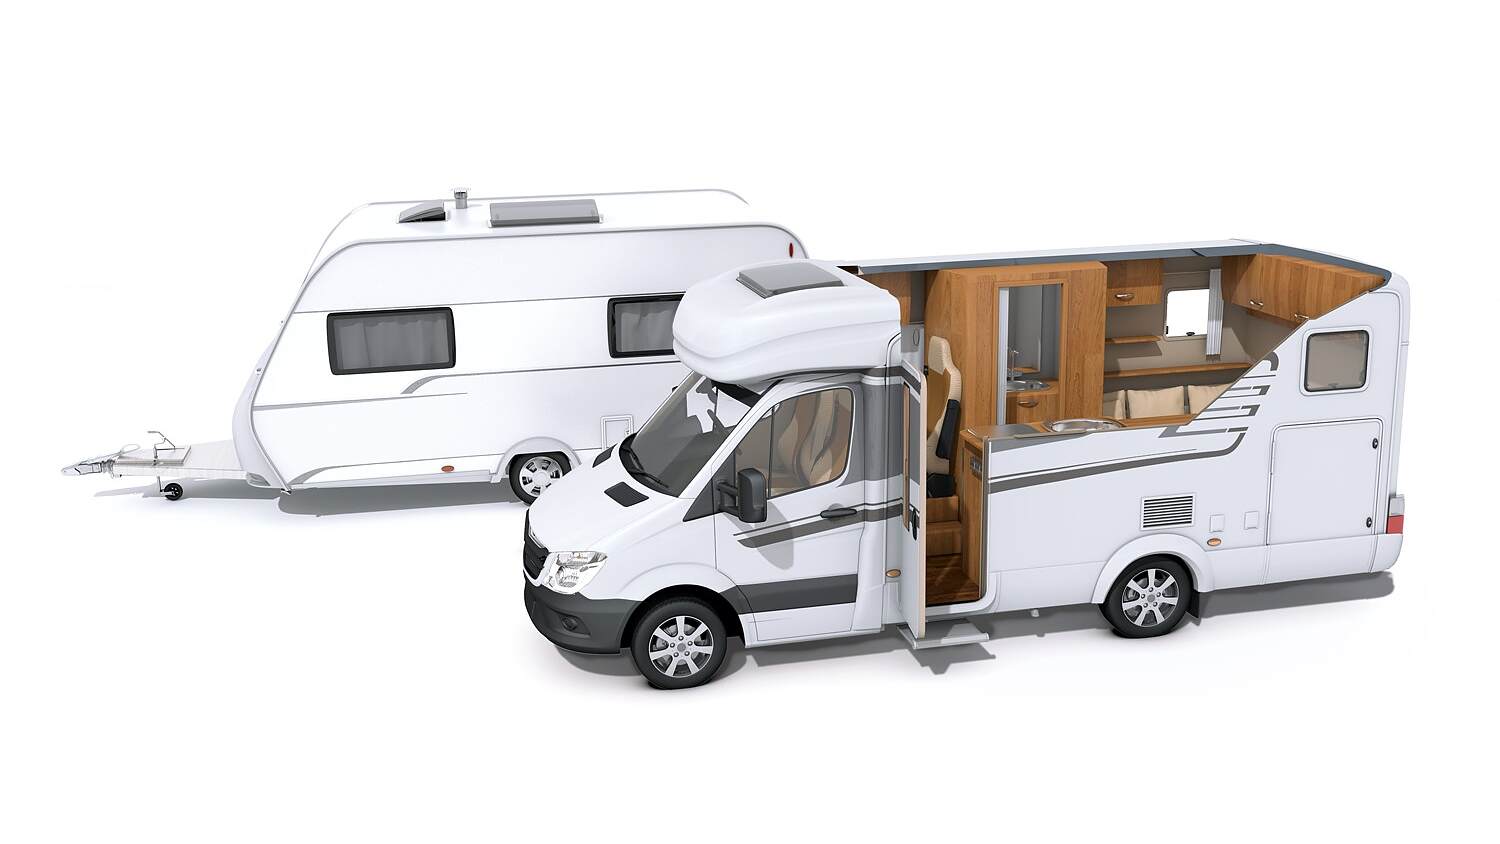  GADLANE Cales pour Camping-Car - Lot de 2 Niveau Camping Car  pour Camping-Cars et Remorques - Résistant aux UV, Blocs de Rampe Camping  Car Durables pour Caravane (Capacité de Charge